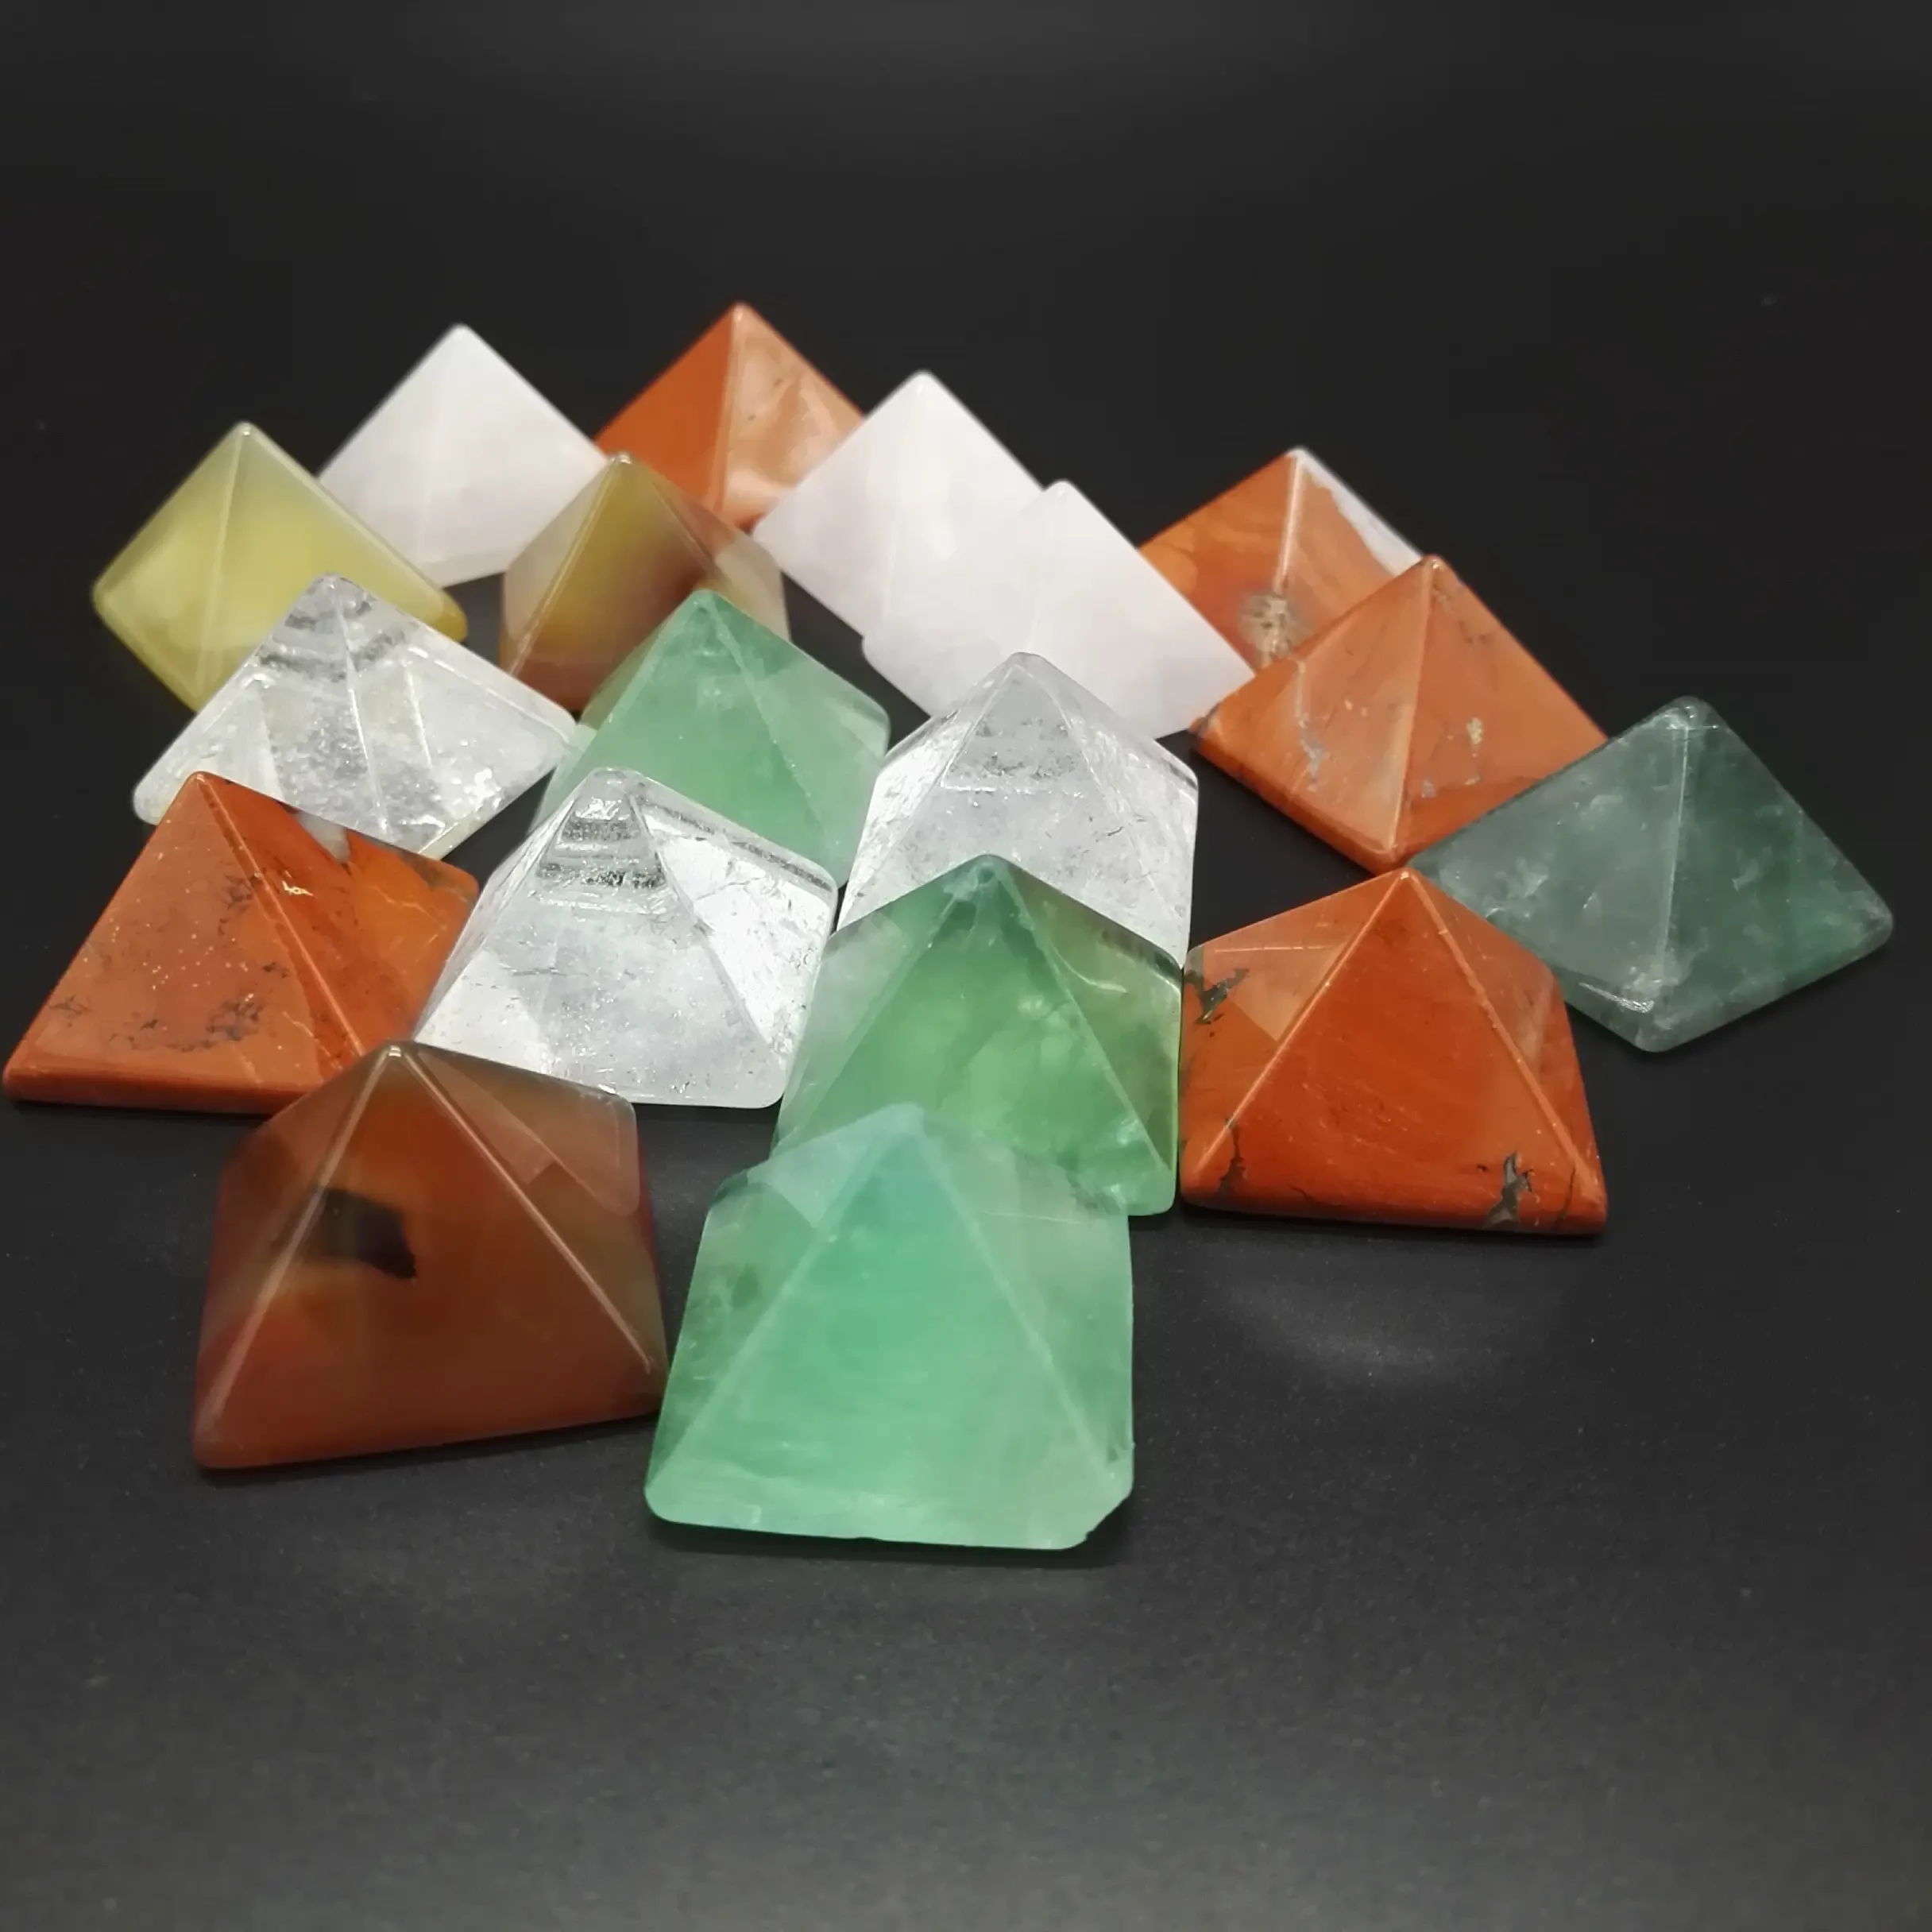 Piedra Natural semipreciosa, piedras curativas de cristal, artesanías de pirámide, adornos